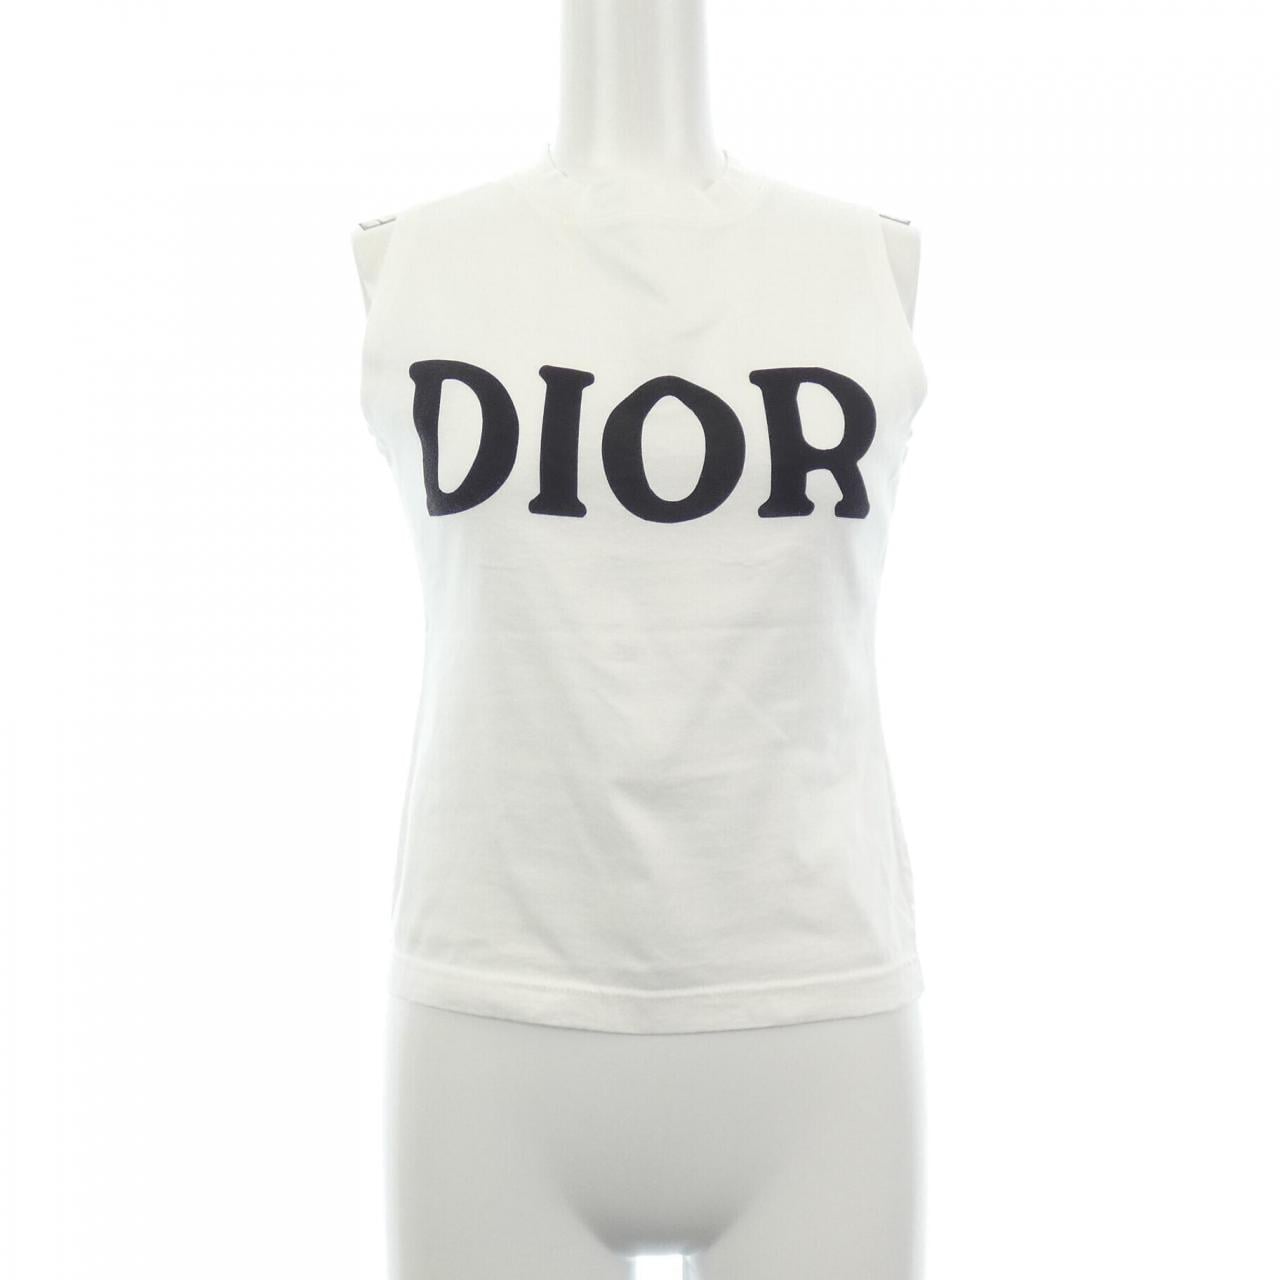 JADOREクリスチャンディオール Christian Dior タンクトップ